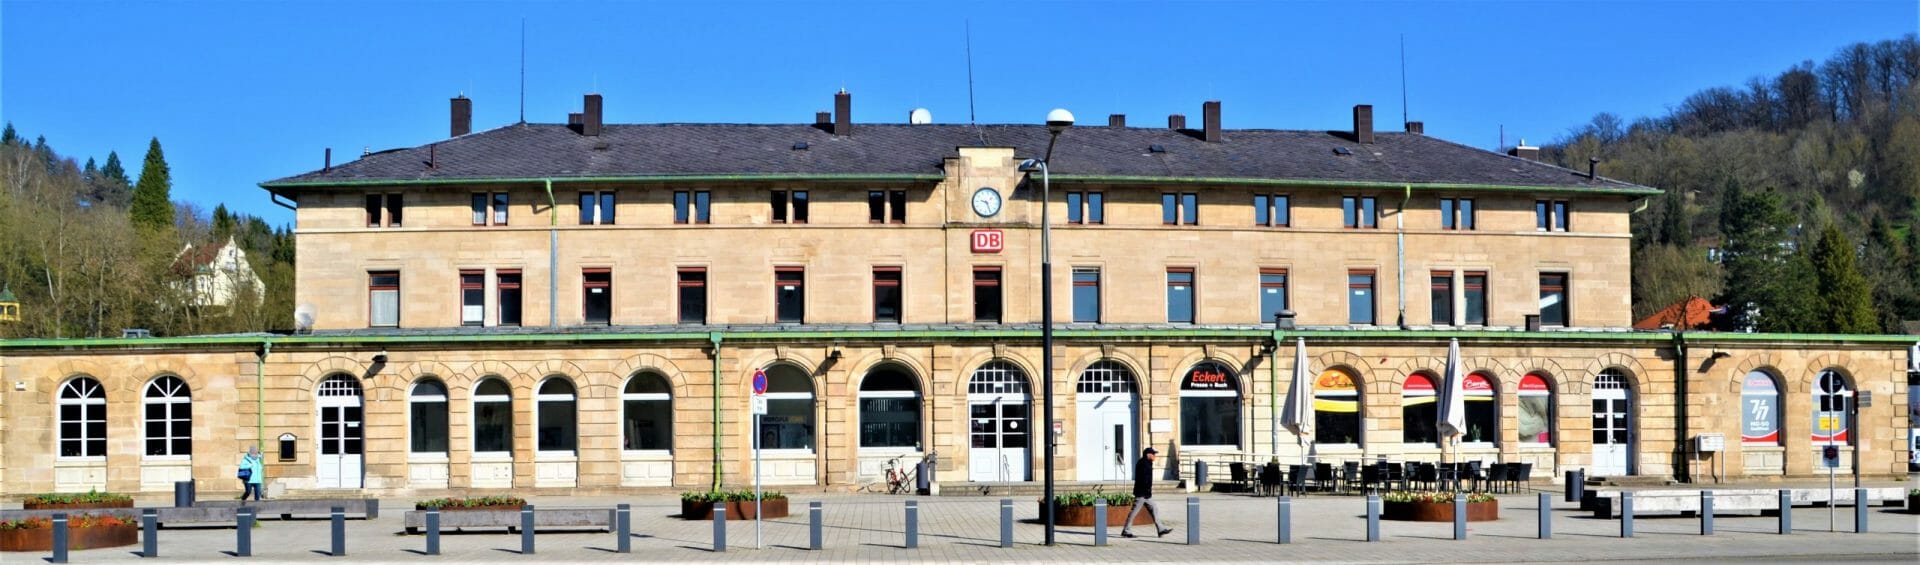 Bahnhof Schwäbisch Gmünd